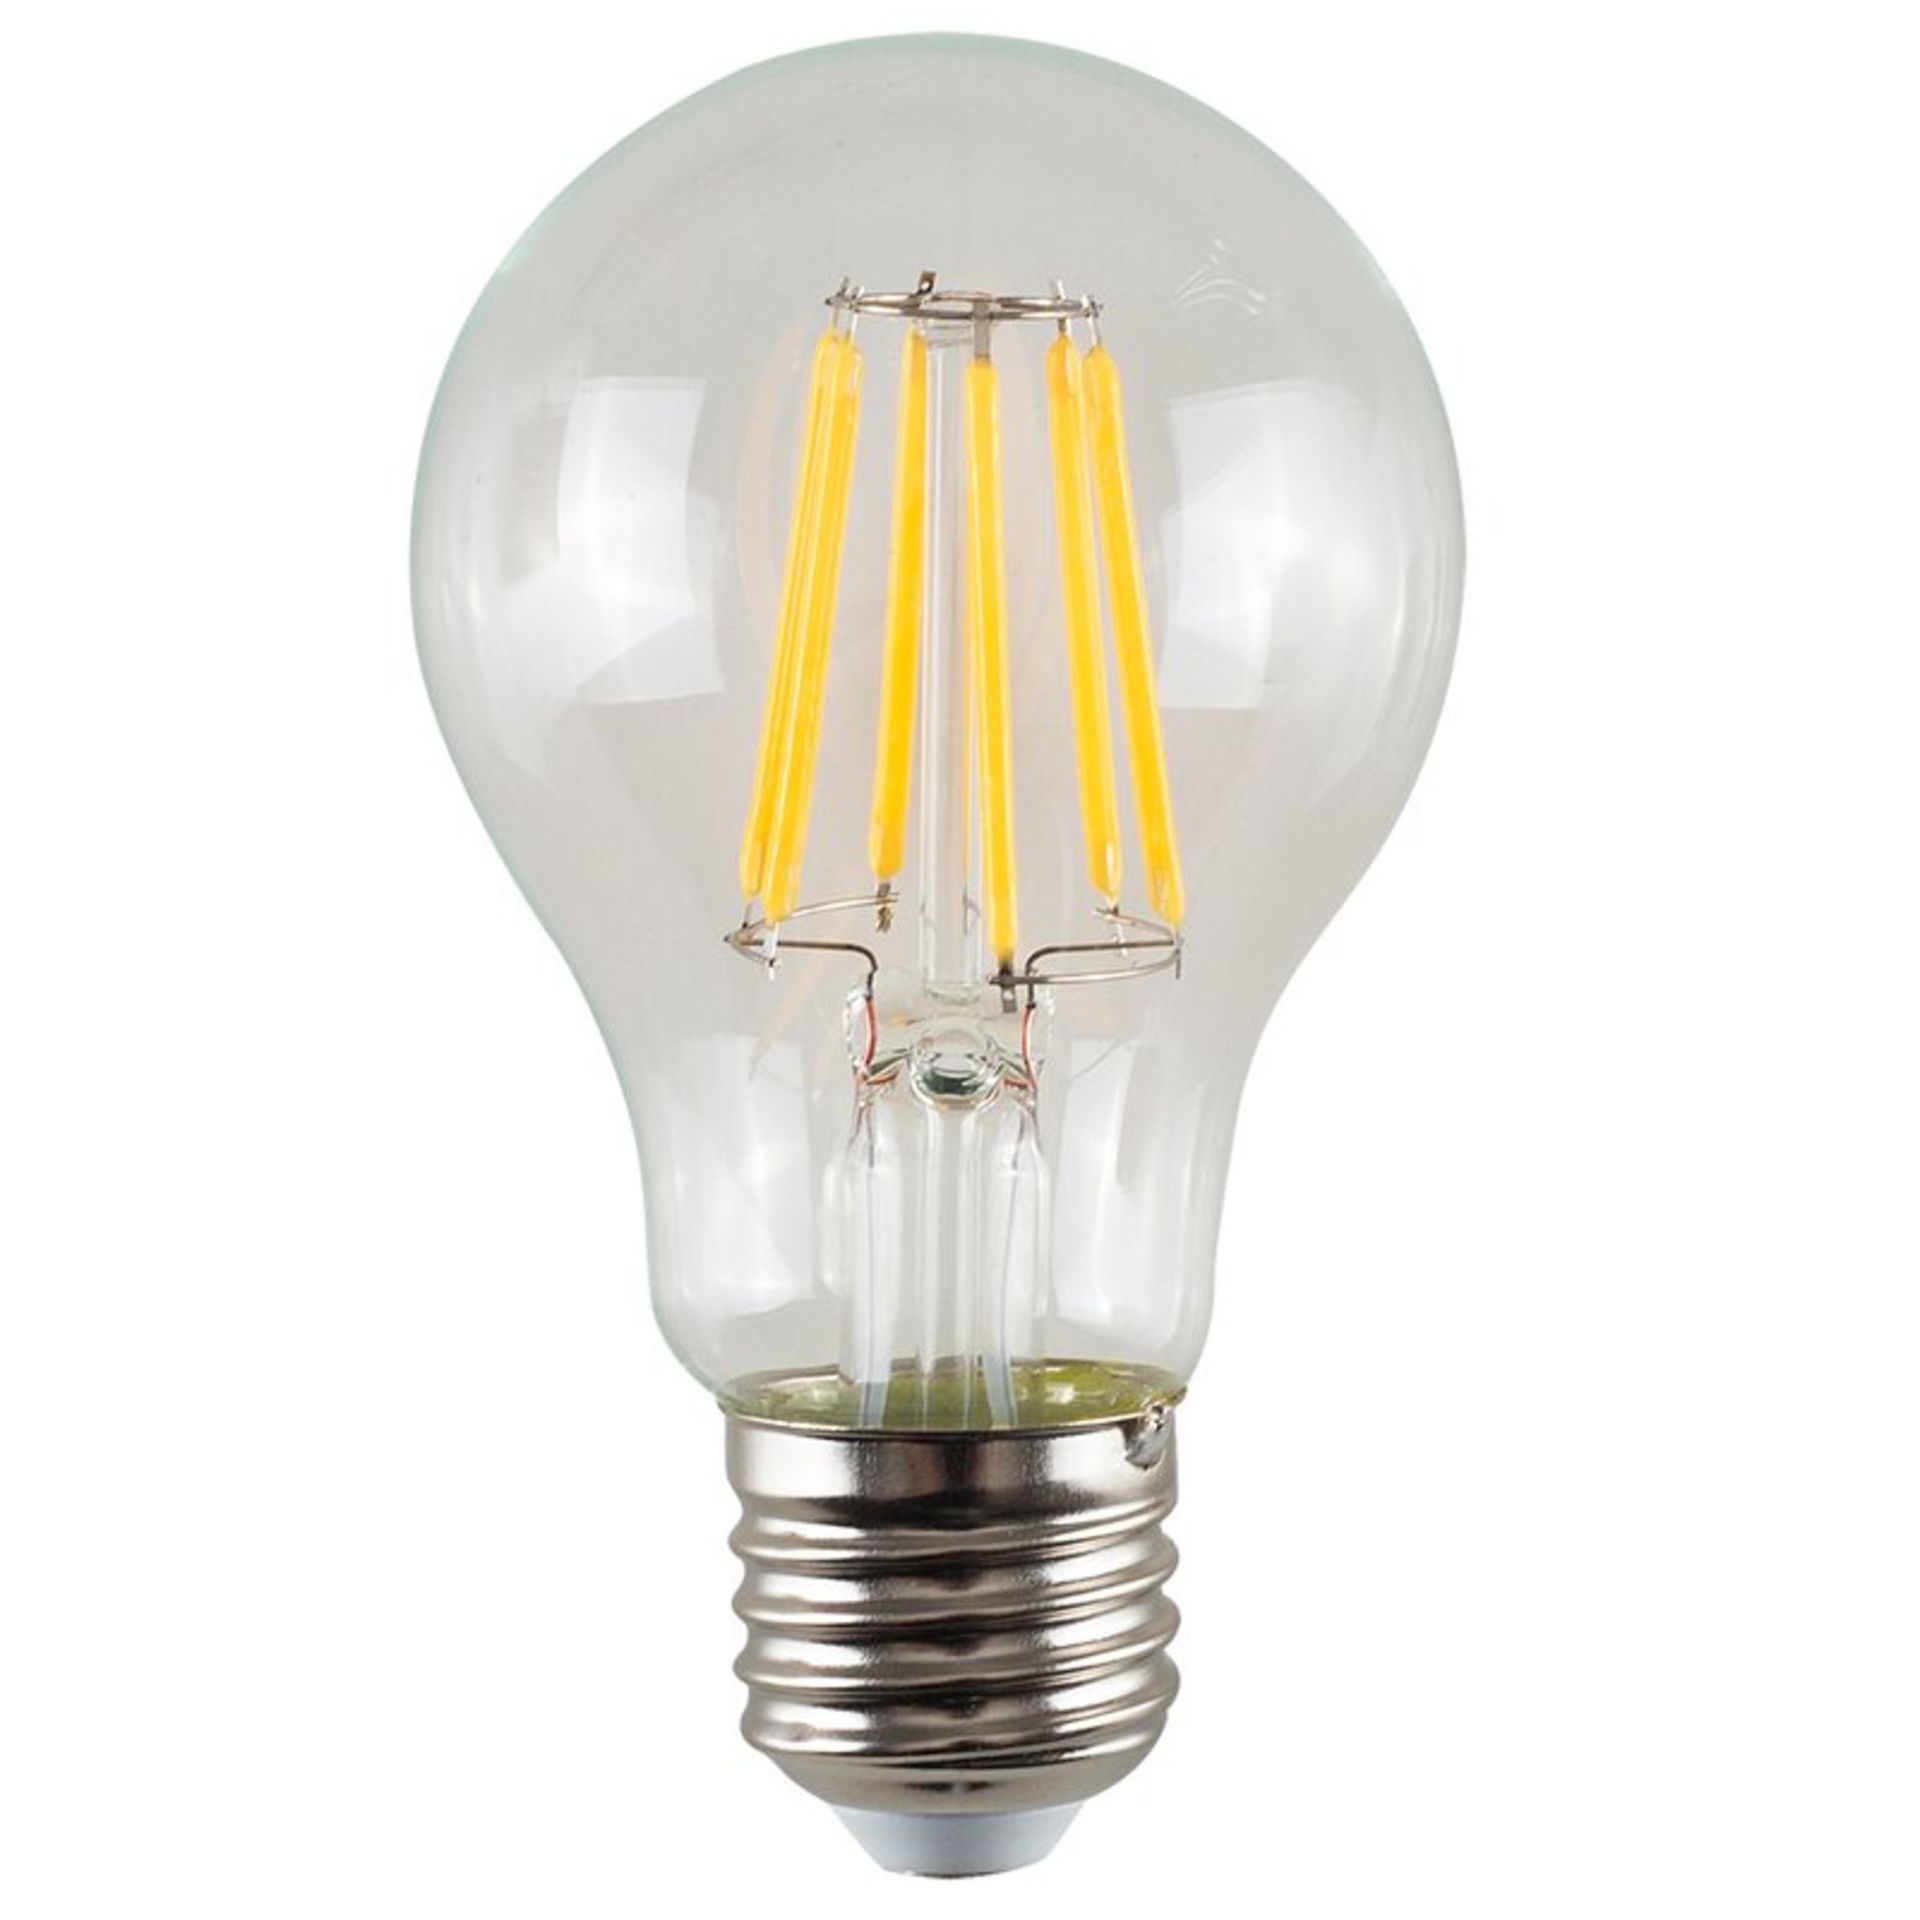 5x E27 LED Vintage Edison GLS Light Bulb Total RRP £37.53